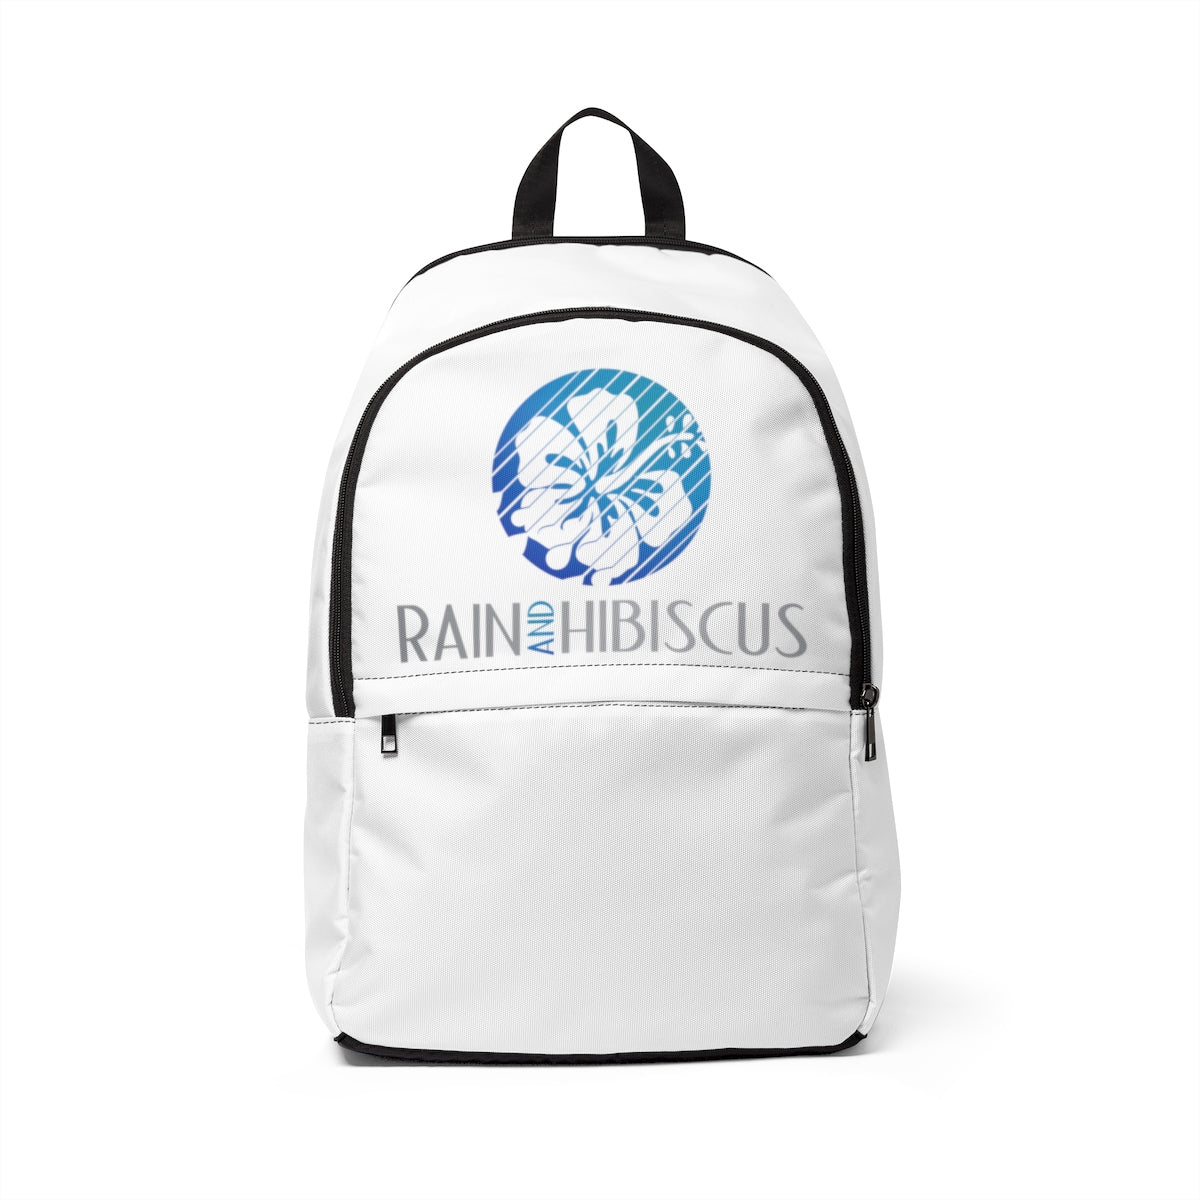 Unisex Fabric Backpack - Rain & Hibiscus